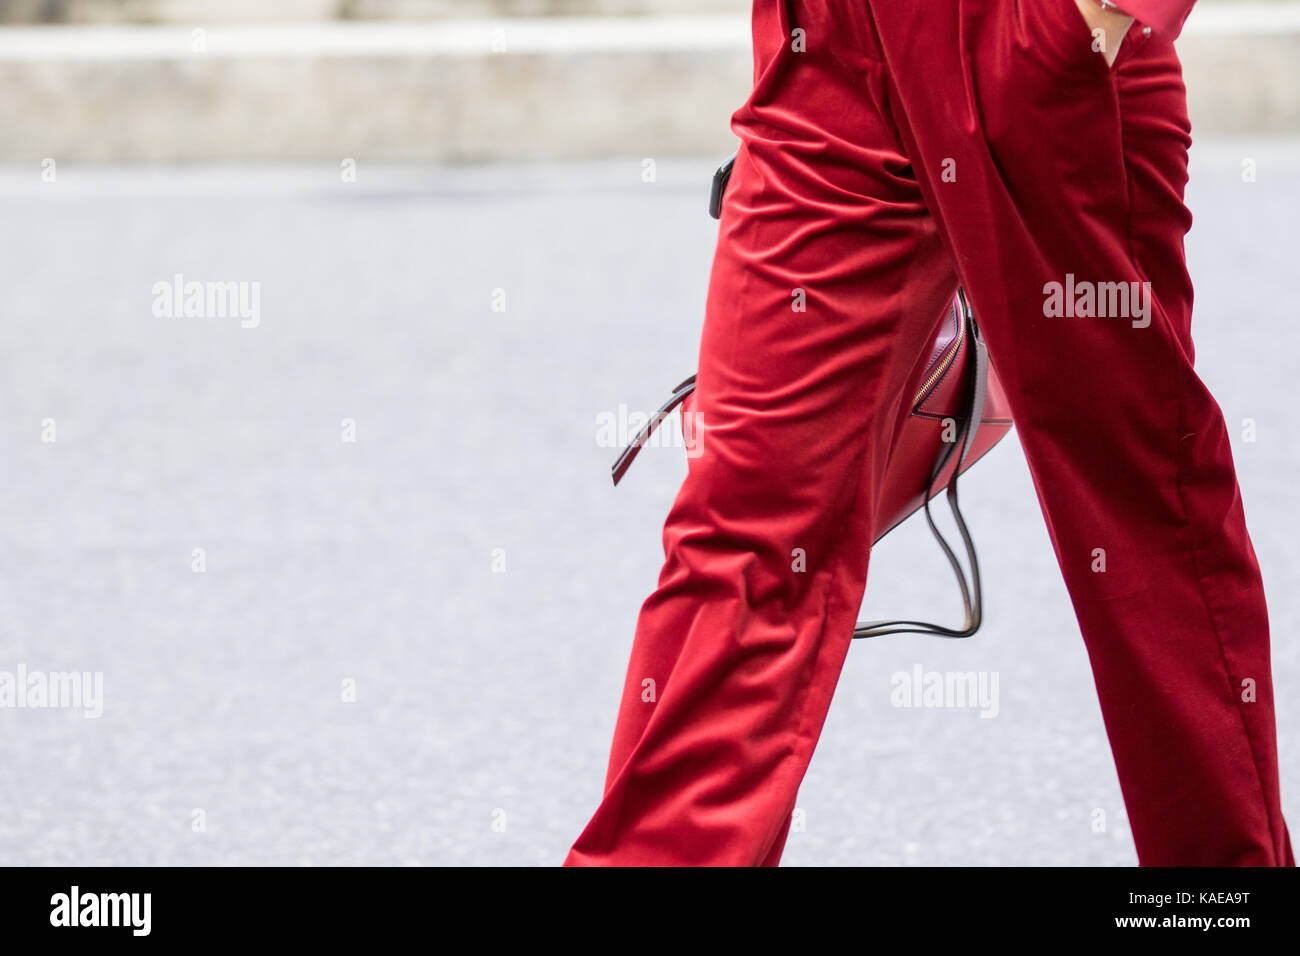 Mailand, Italien - 22. September 2017: Modell, ein Paar rote Hosen und rote Handtasche während der armani Parade, auf der Straße fotografiert. Stockfoto